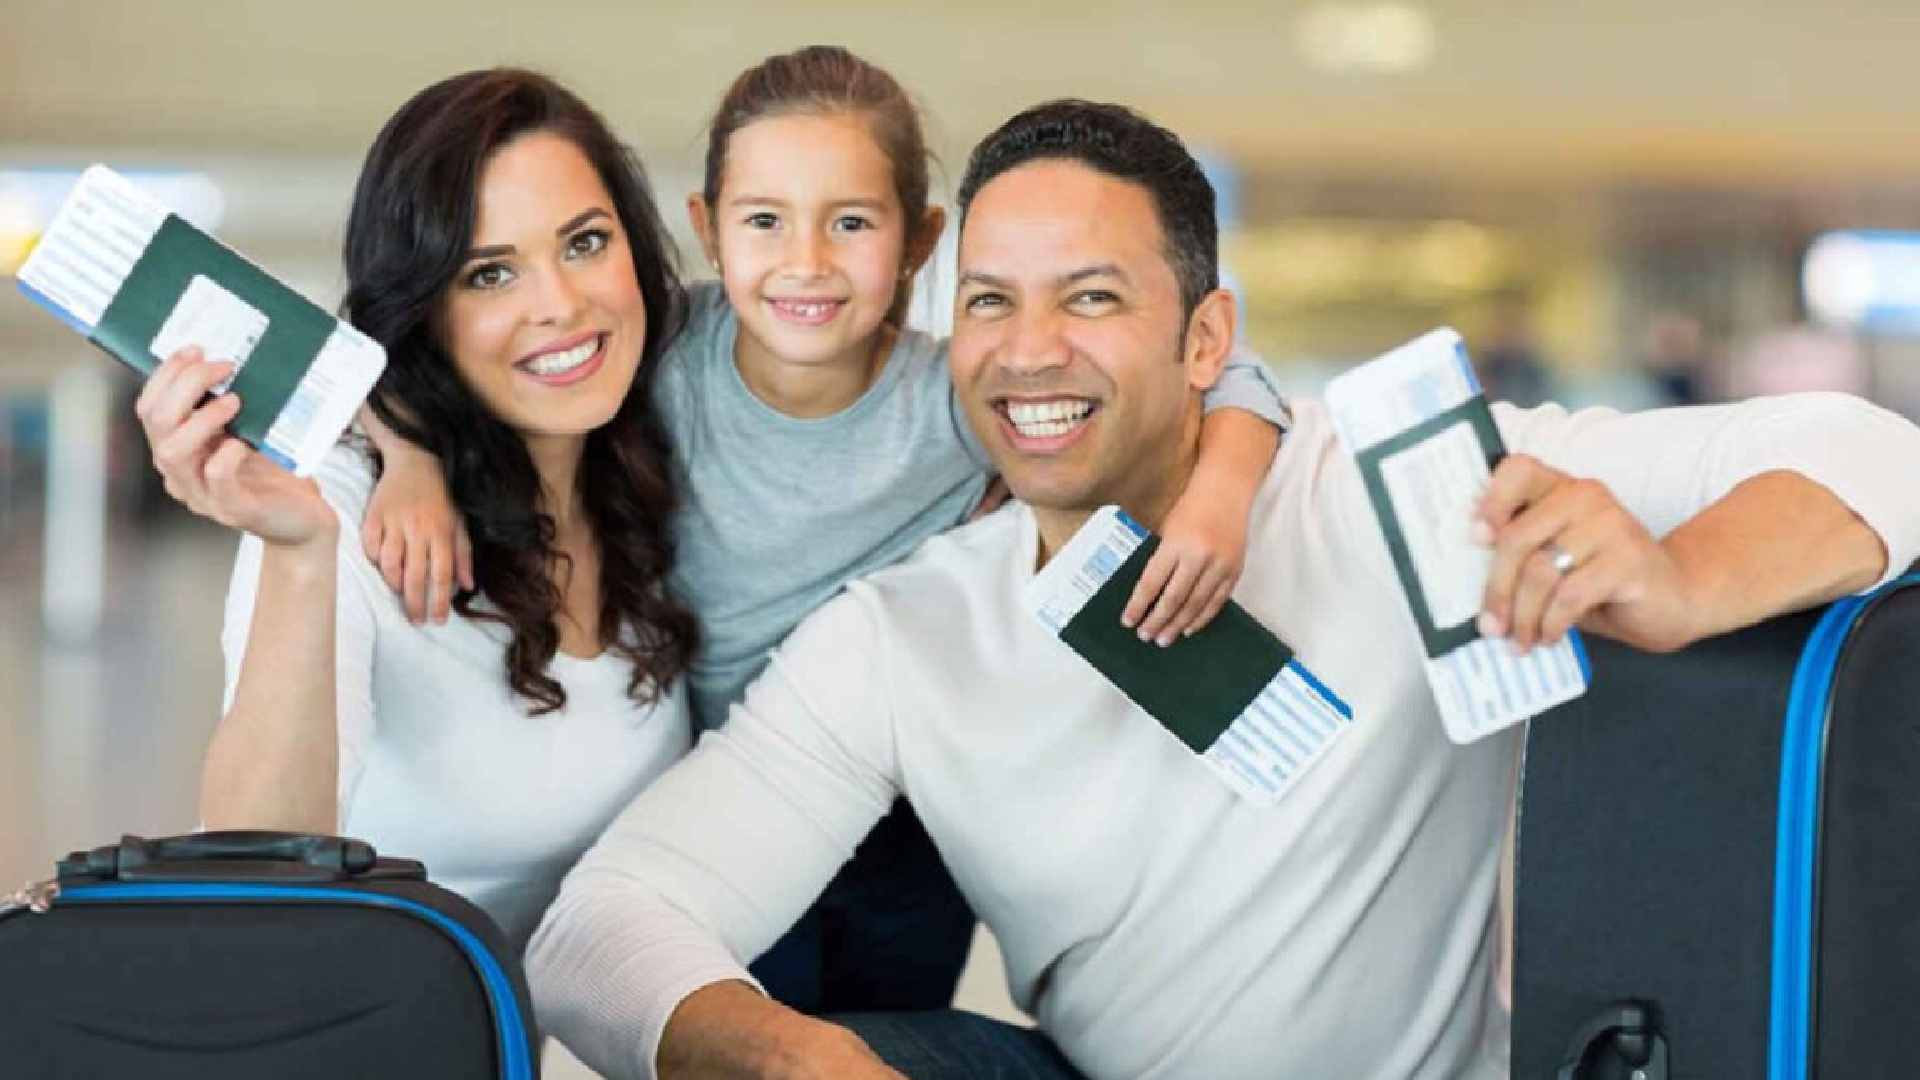 Saudi family visit visa 